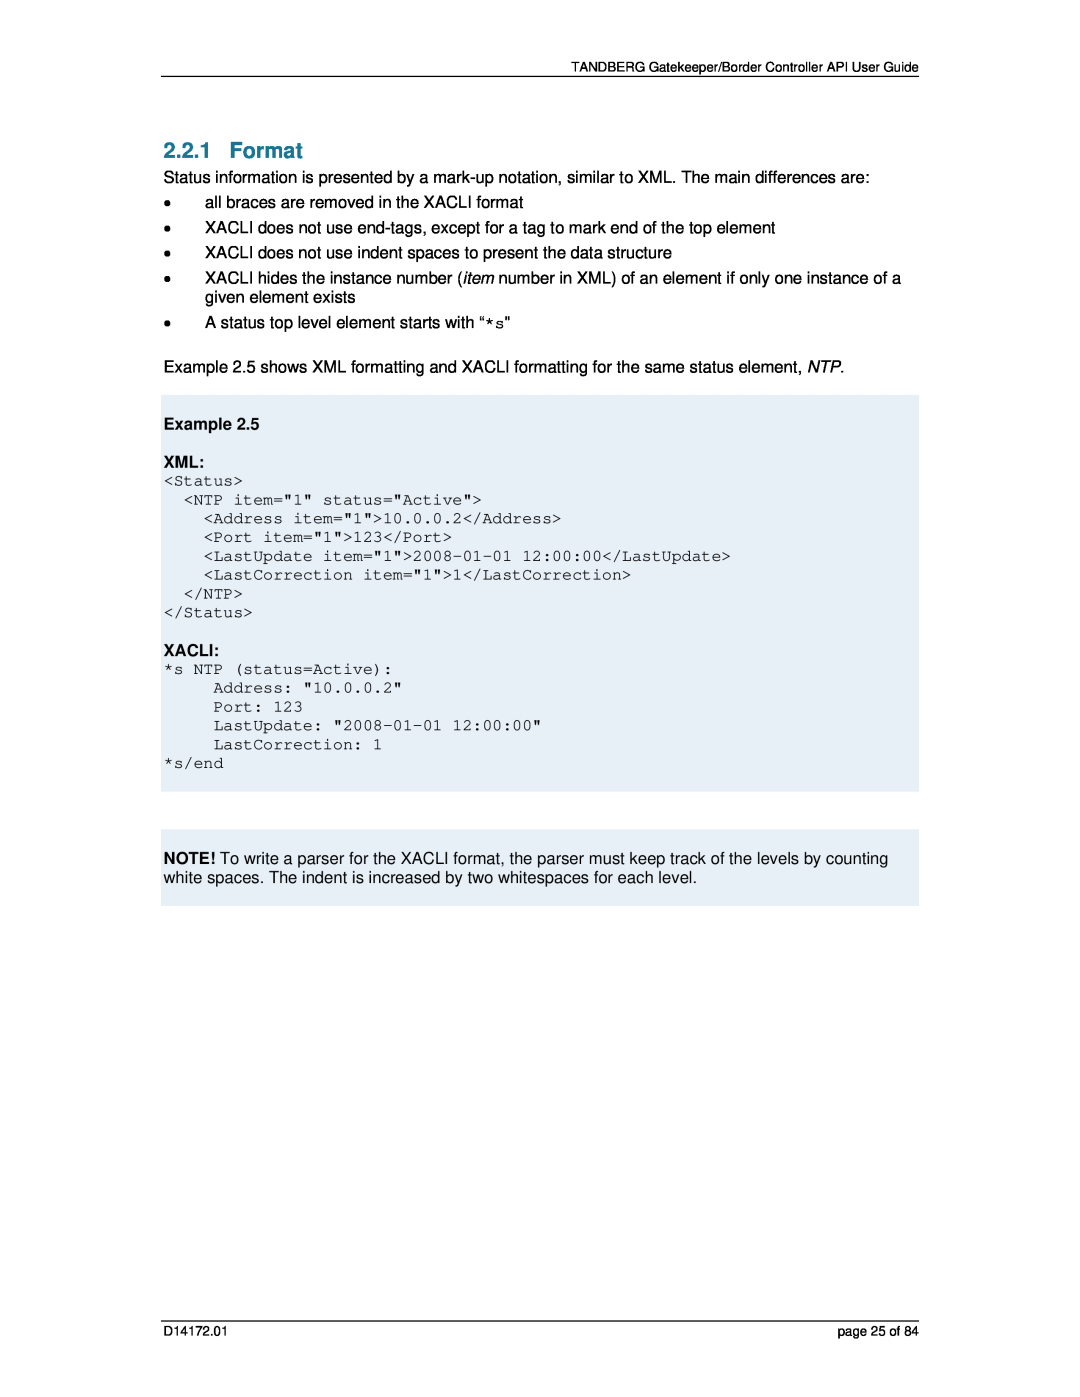 TANDBERG D14172.01 manual Format, Example XML, Xacli 